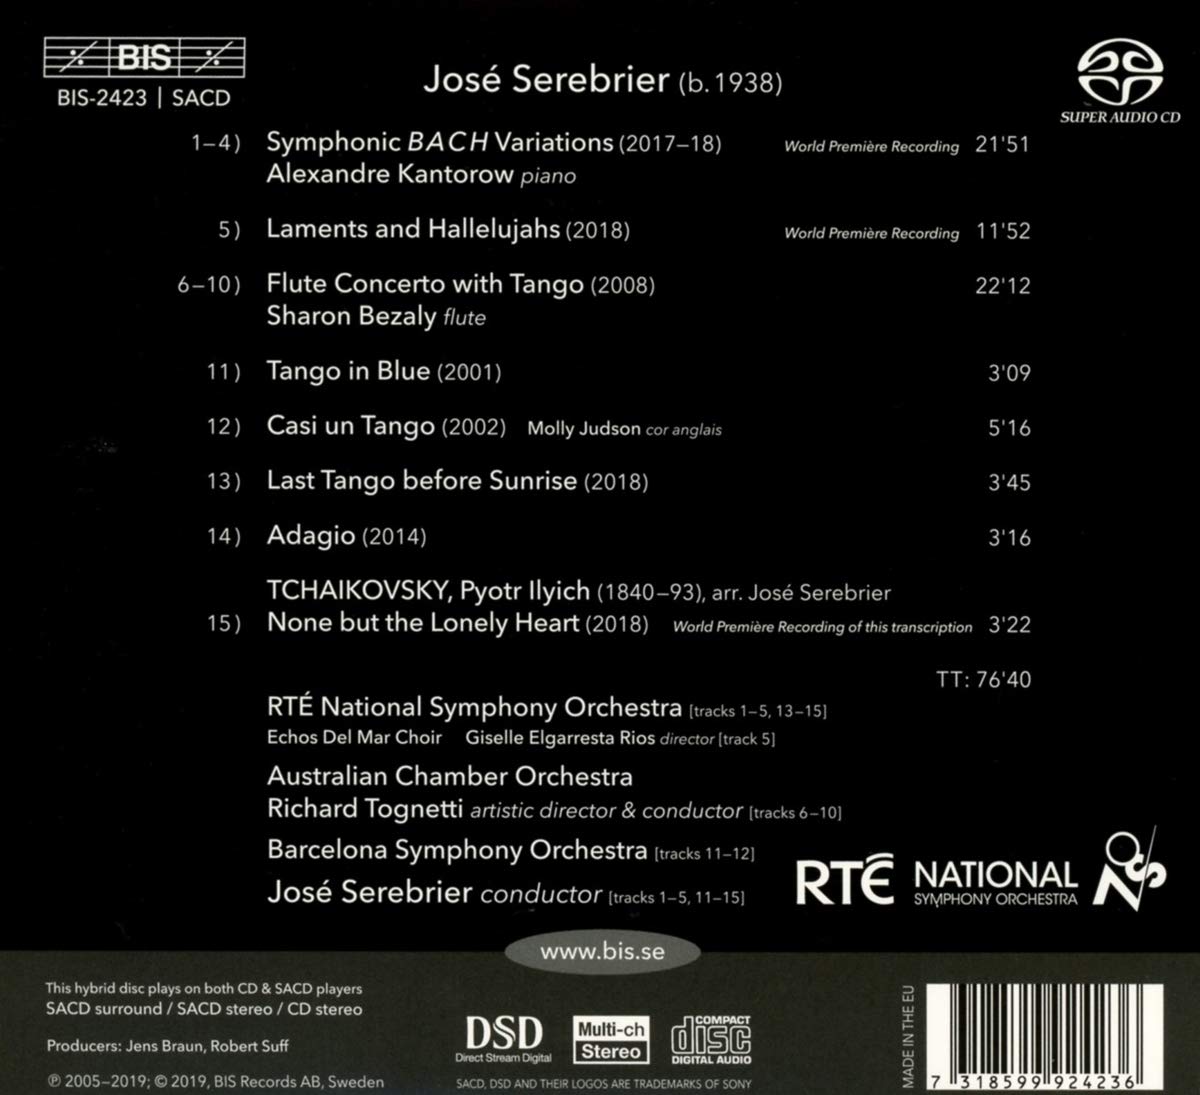 호세 세레브리에: 교향적 바흐 변주곡 (Jose Serebrier: Symphonic Bach Variations and other works)